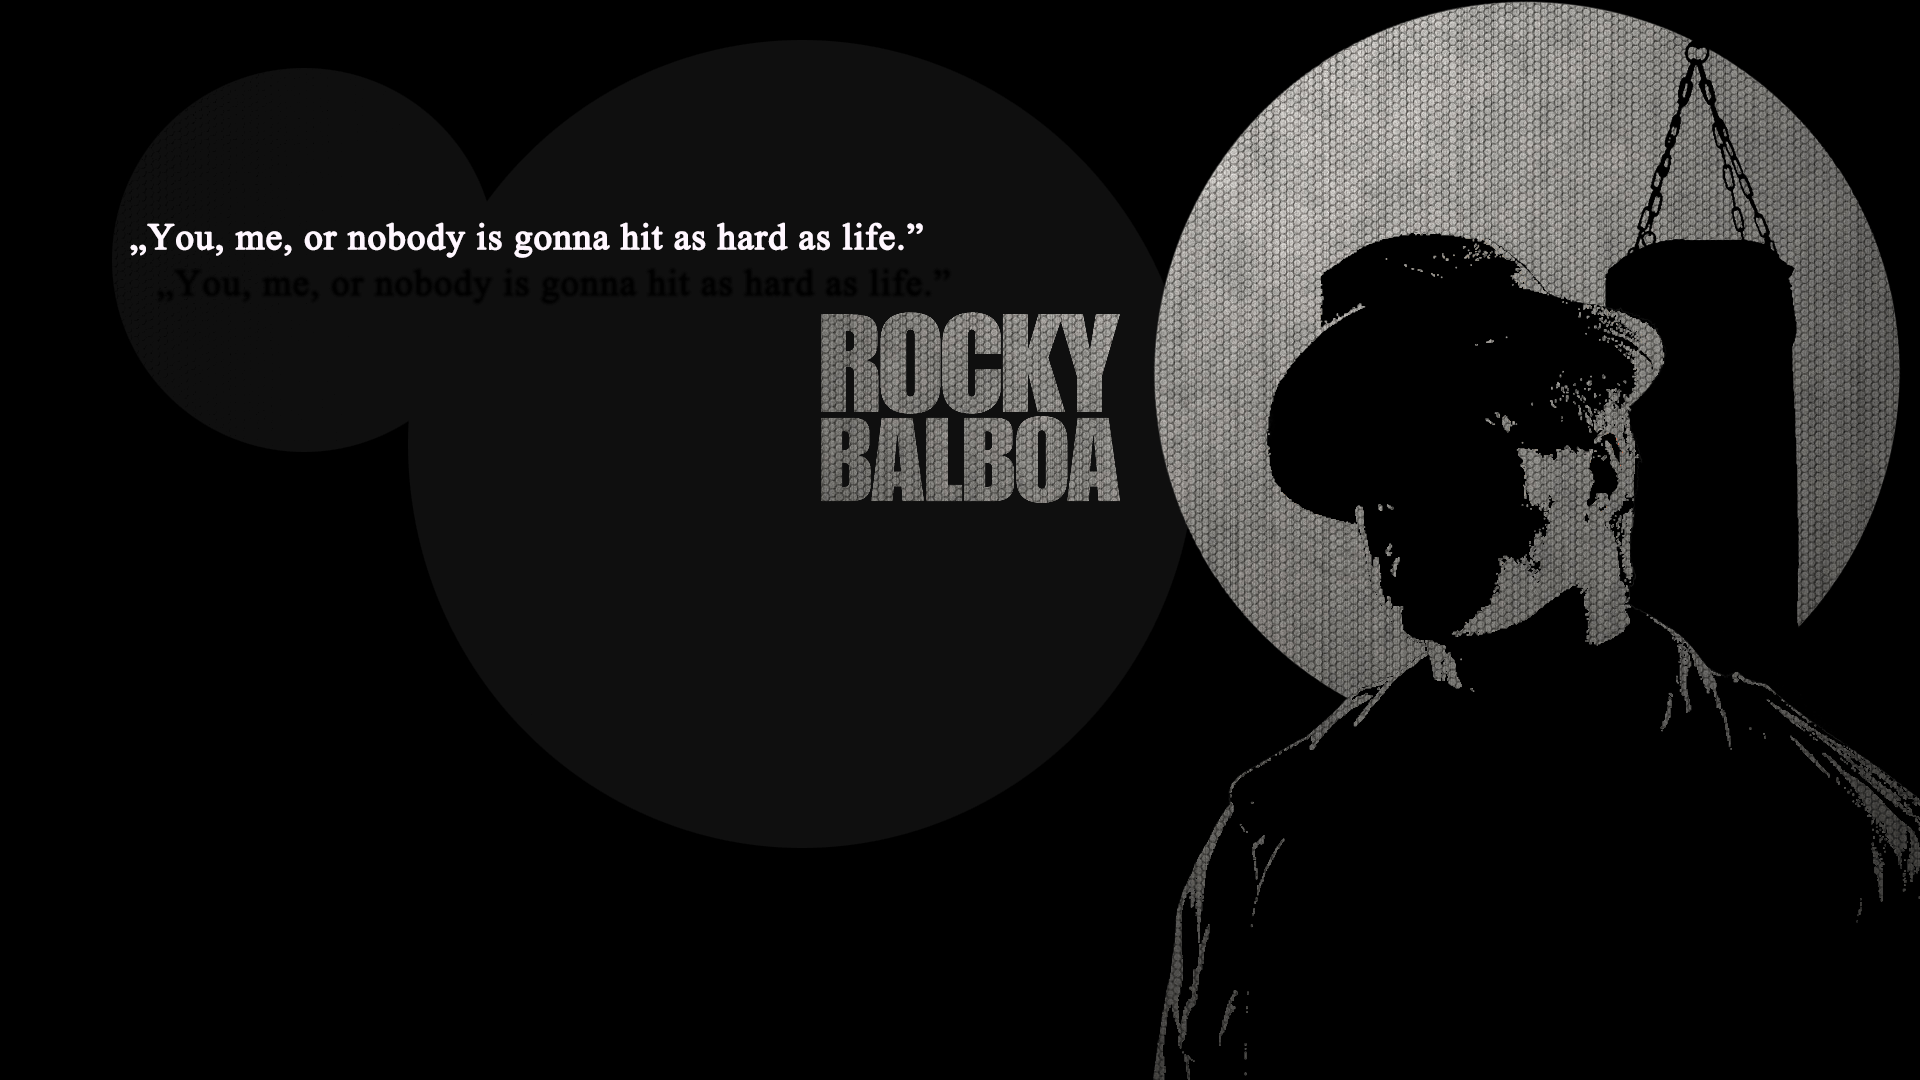 Rocky Balboa. Rocky. Rocky balboa and Movie